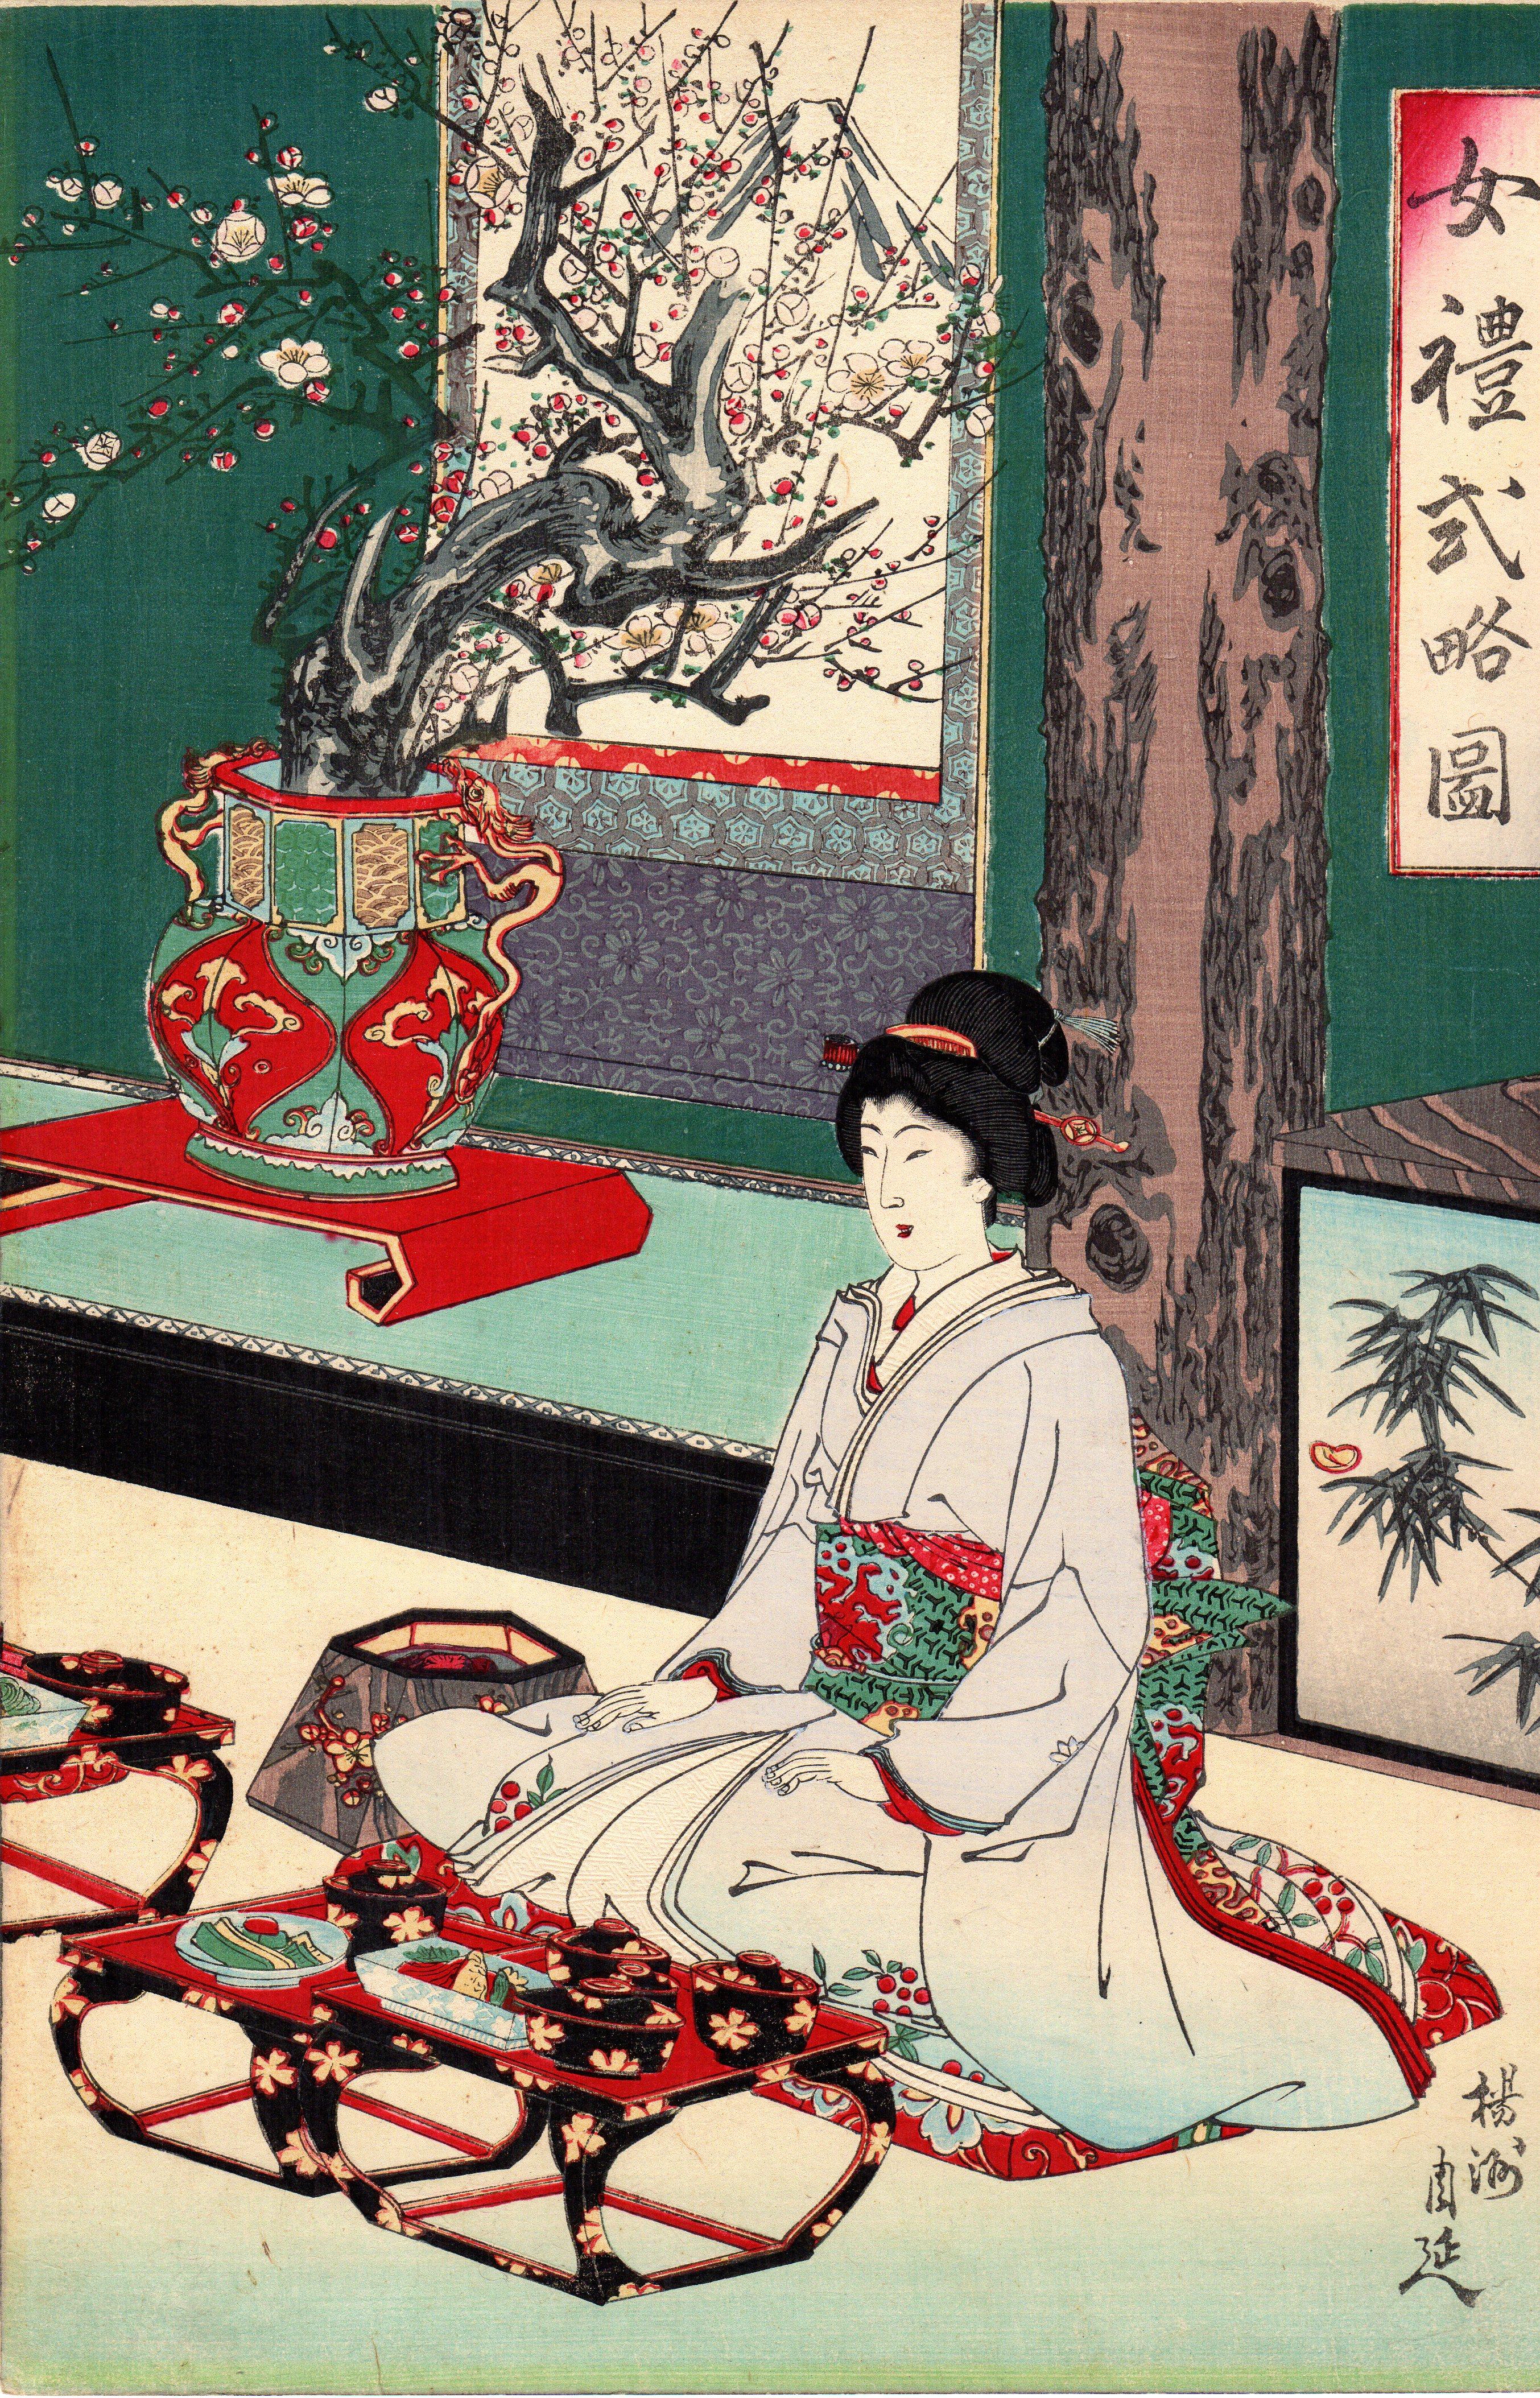 Original Japanisches Triptychon Farbholzschnitt von Toyohara Chikanobu
- Titel: Neujahrsgerichte: Etikette einer Dame
- Herausgeber: Takekawa Unosuke
Datum: Ende 19. Jahrhundert
Größe: 3 von 9,25